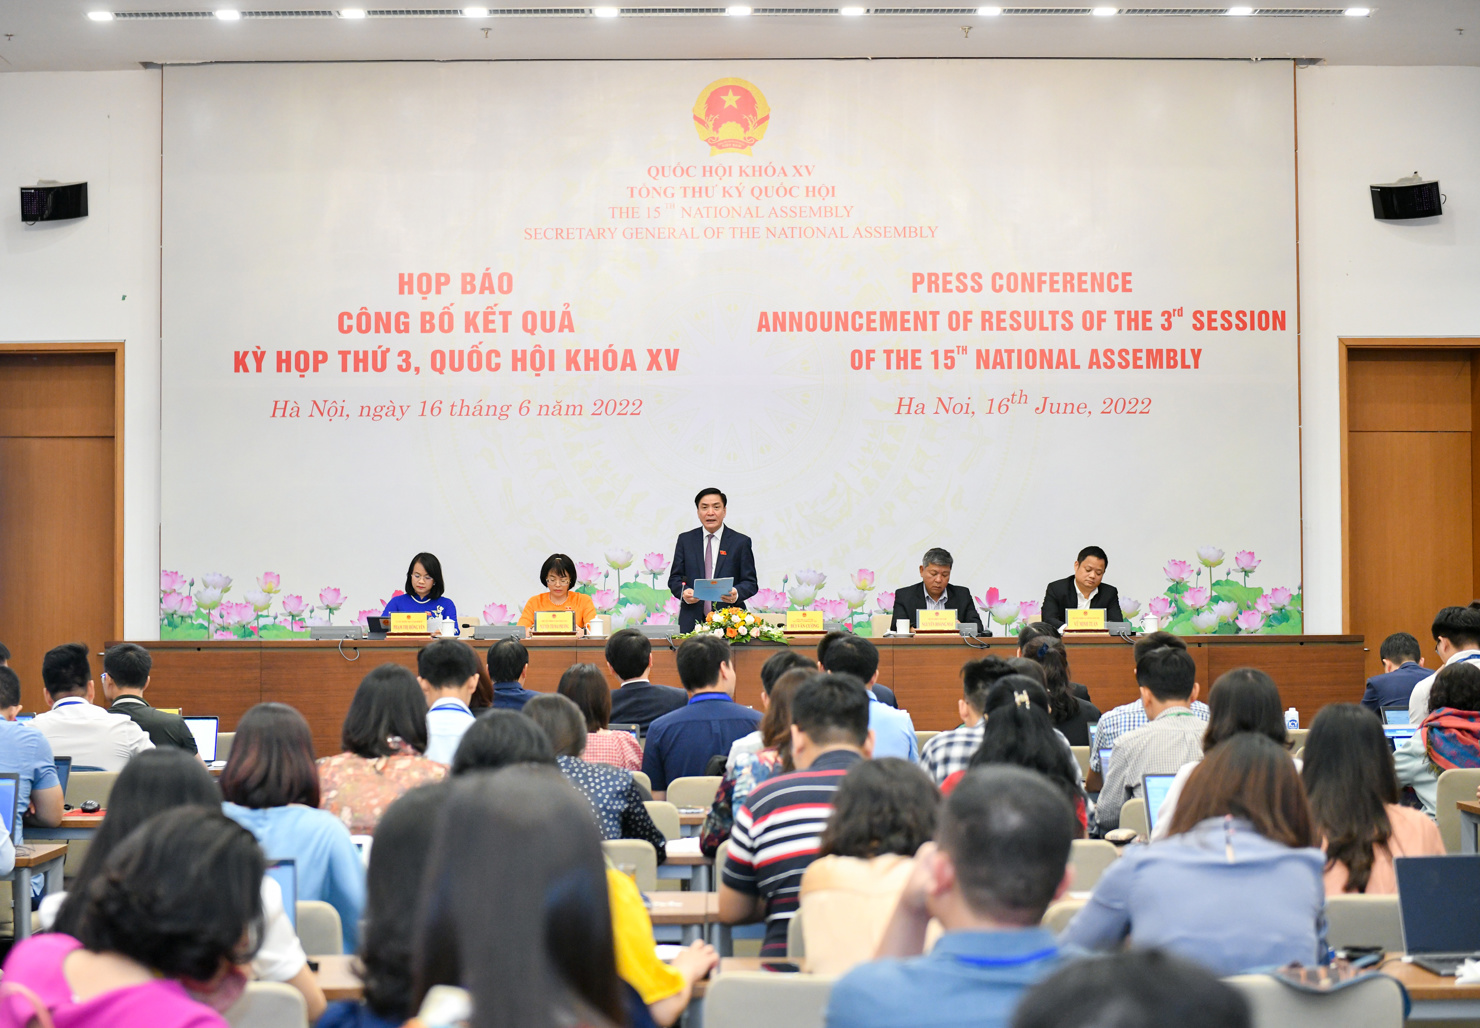 Chủ nhiệm Văn phòng Quốc hội Bùi Văn Cường báo cáo kết quả Kỳ họp thứ 3, Quốc hội khóa XV.